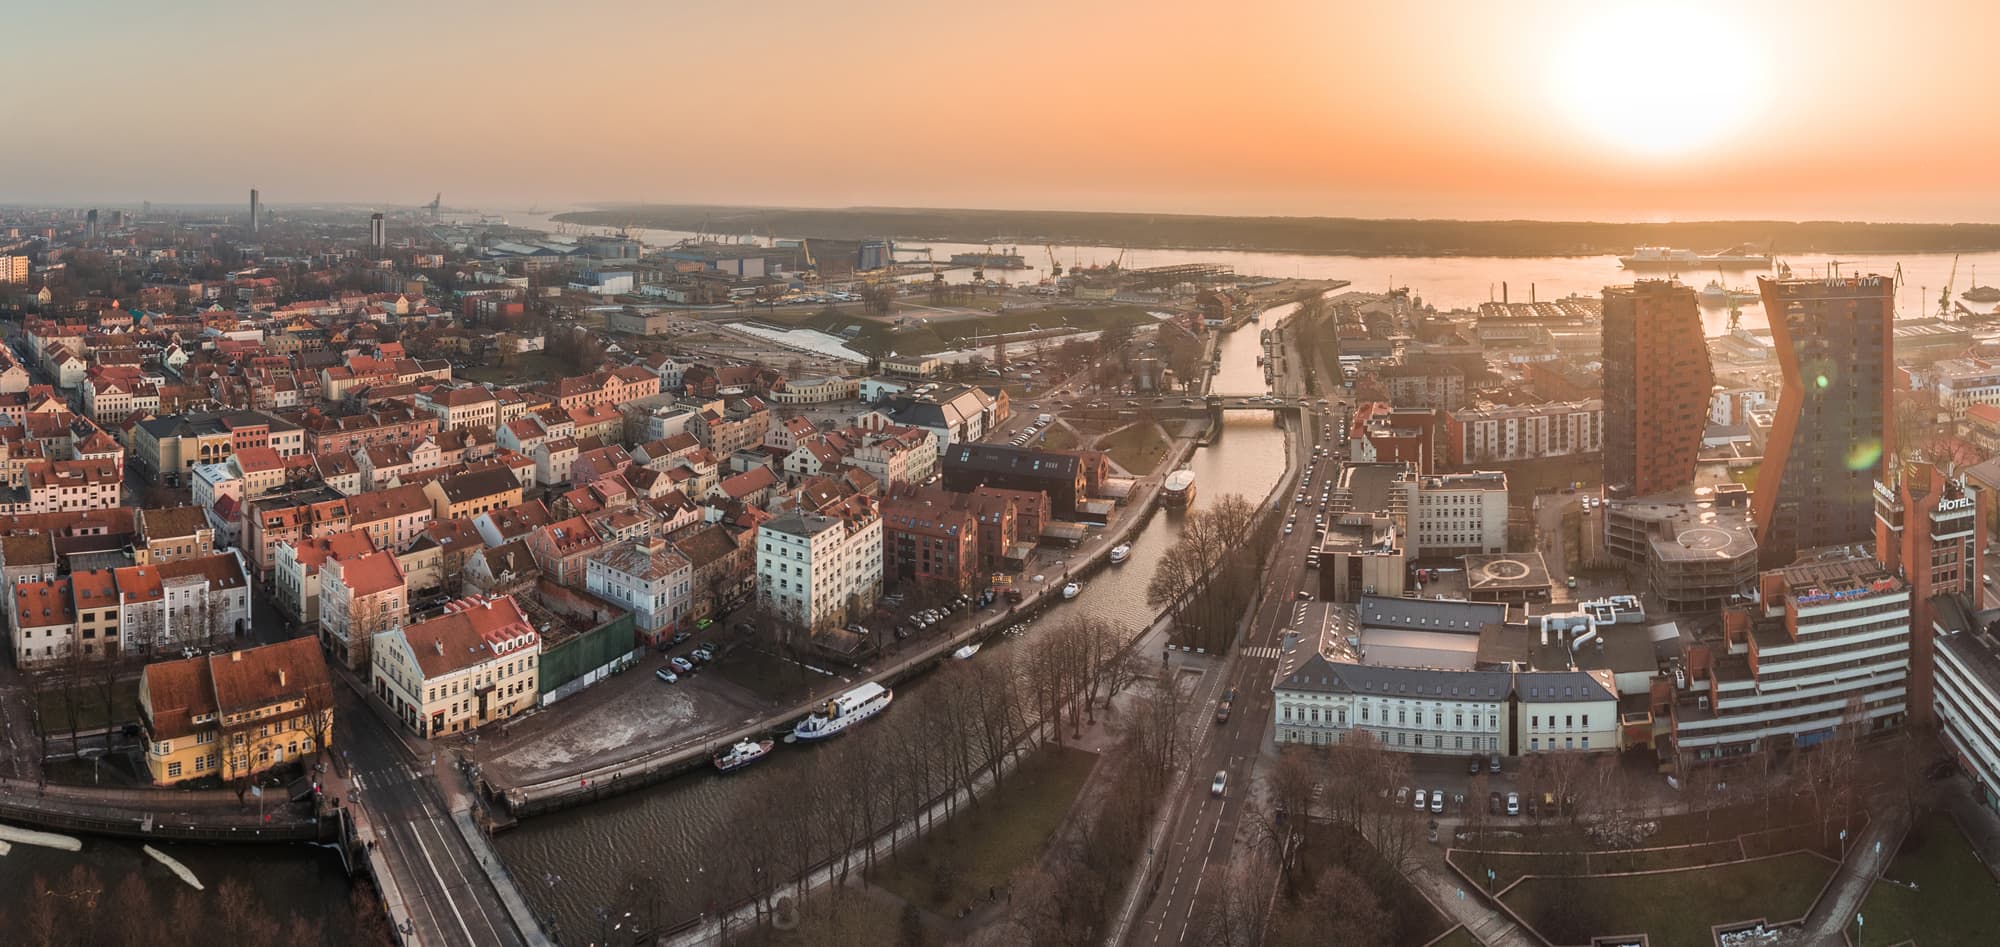 Klaipėdos panorama 360. Drono foto